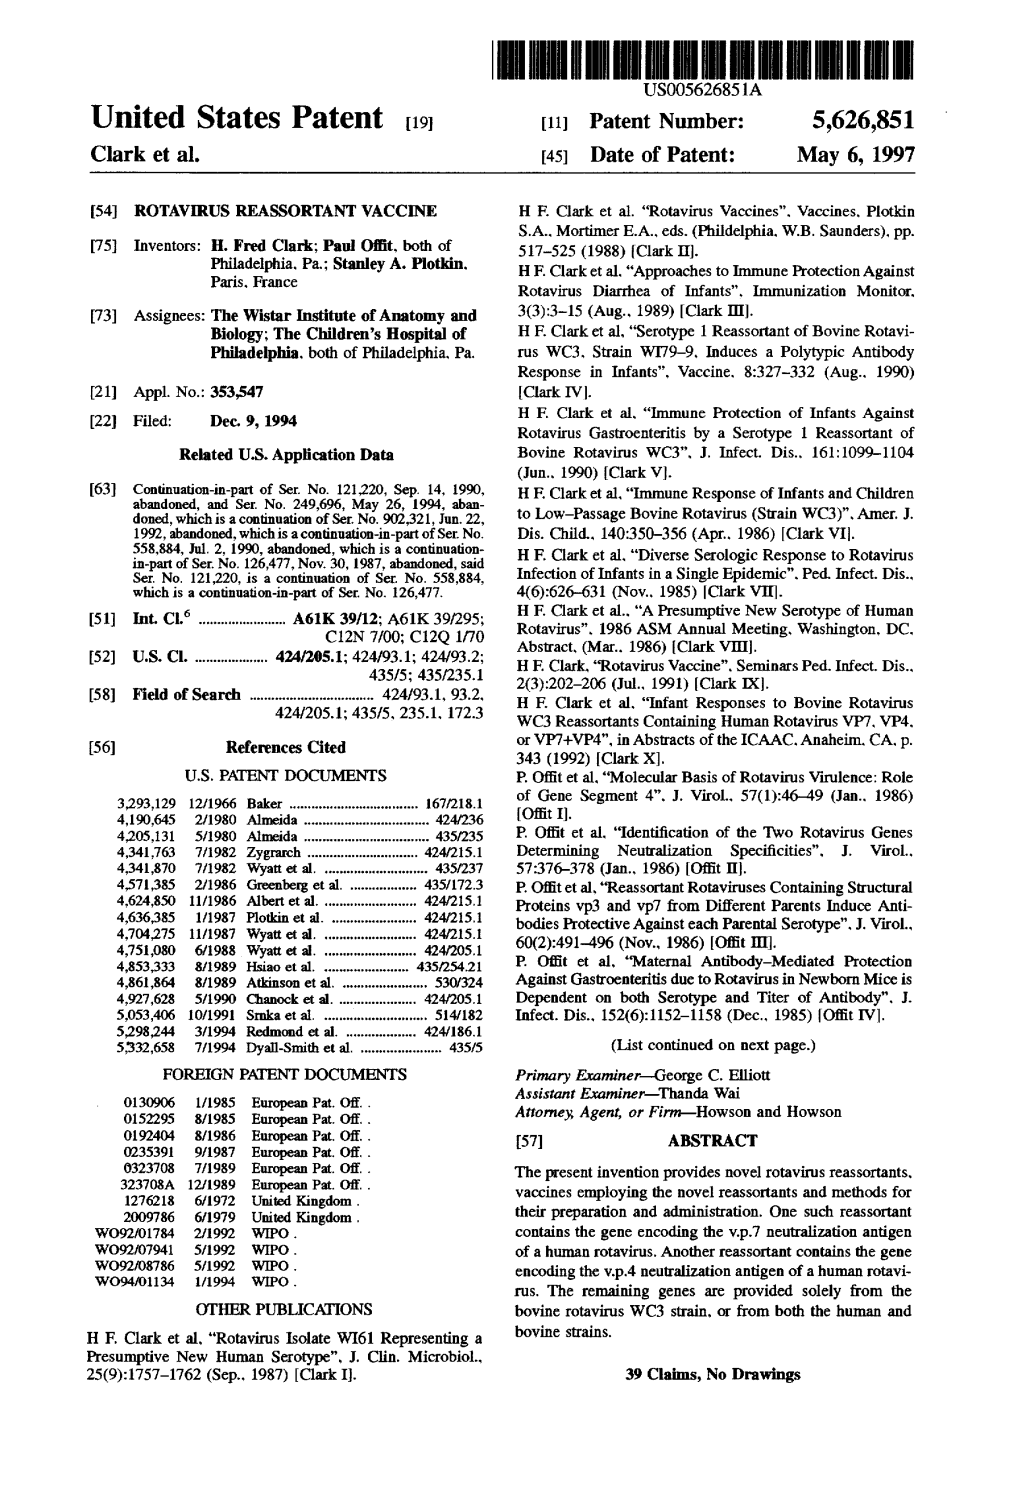 United States Patent 19 11 Patent Number: 5,626,851 Clark Et Al